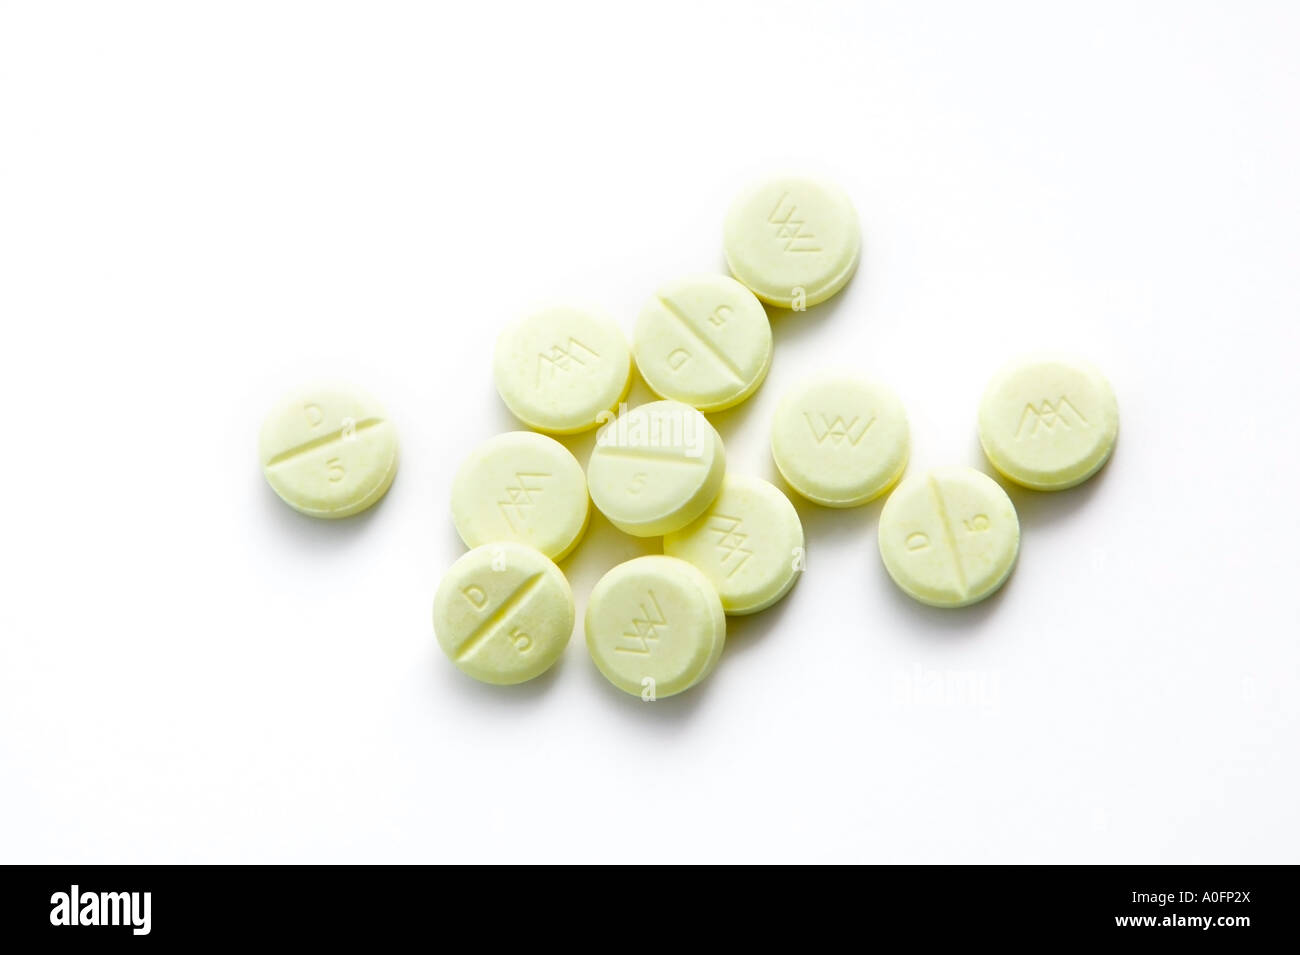 5 pastilla mg diazepam